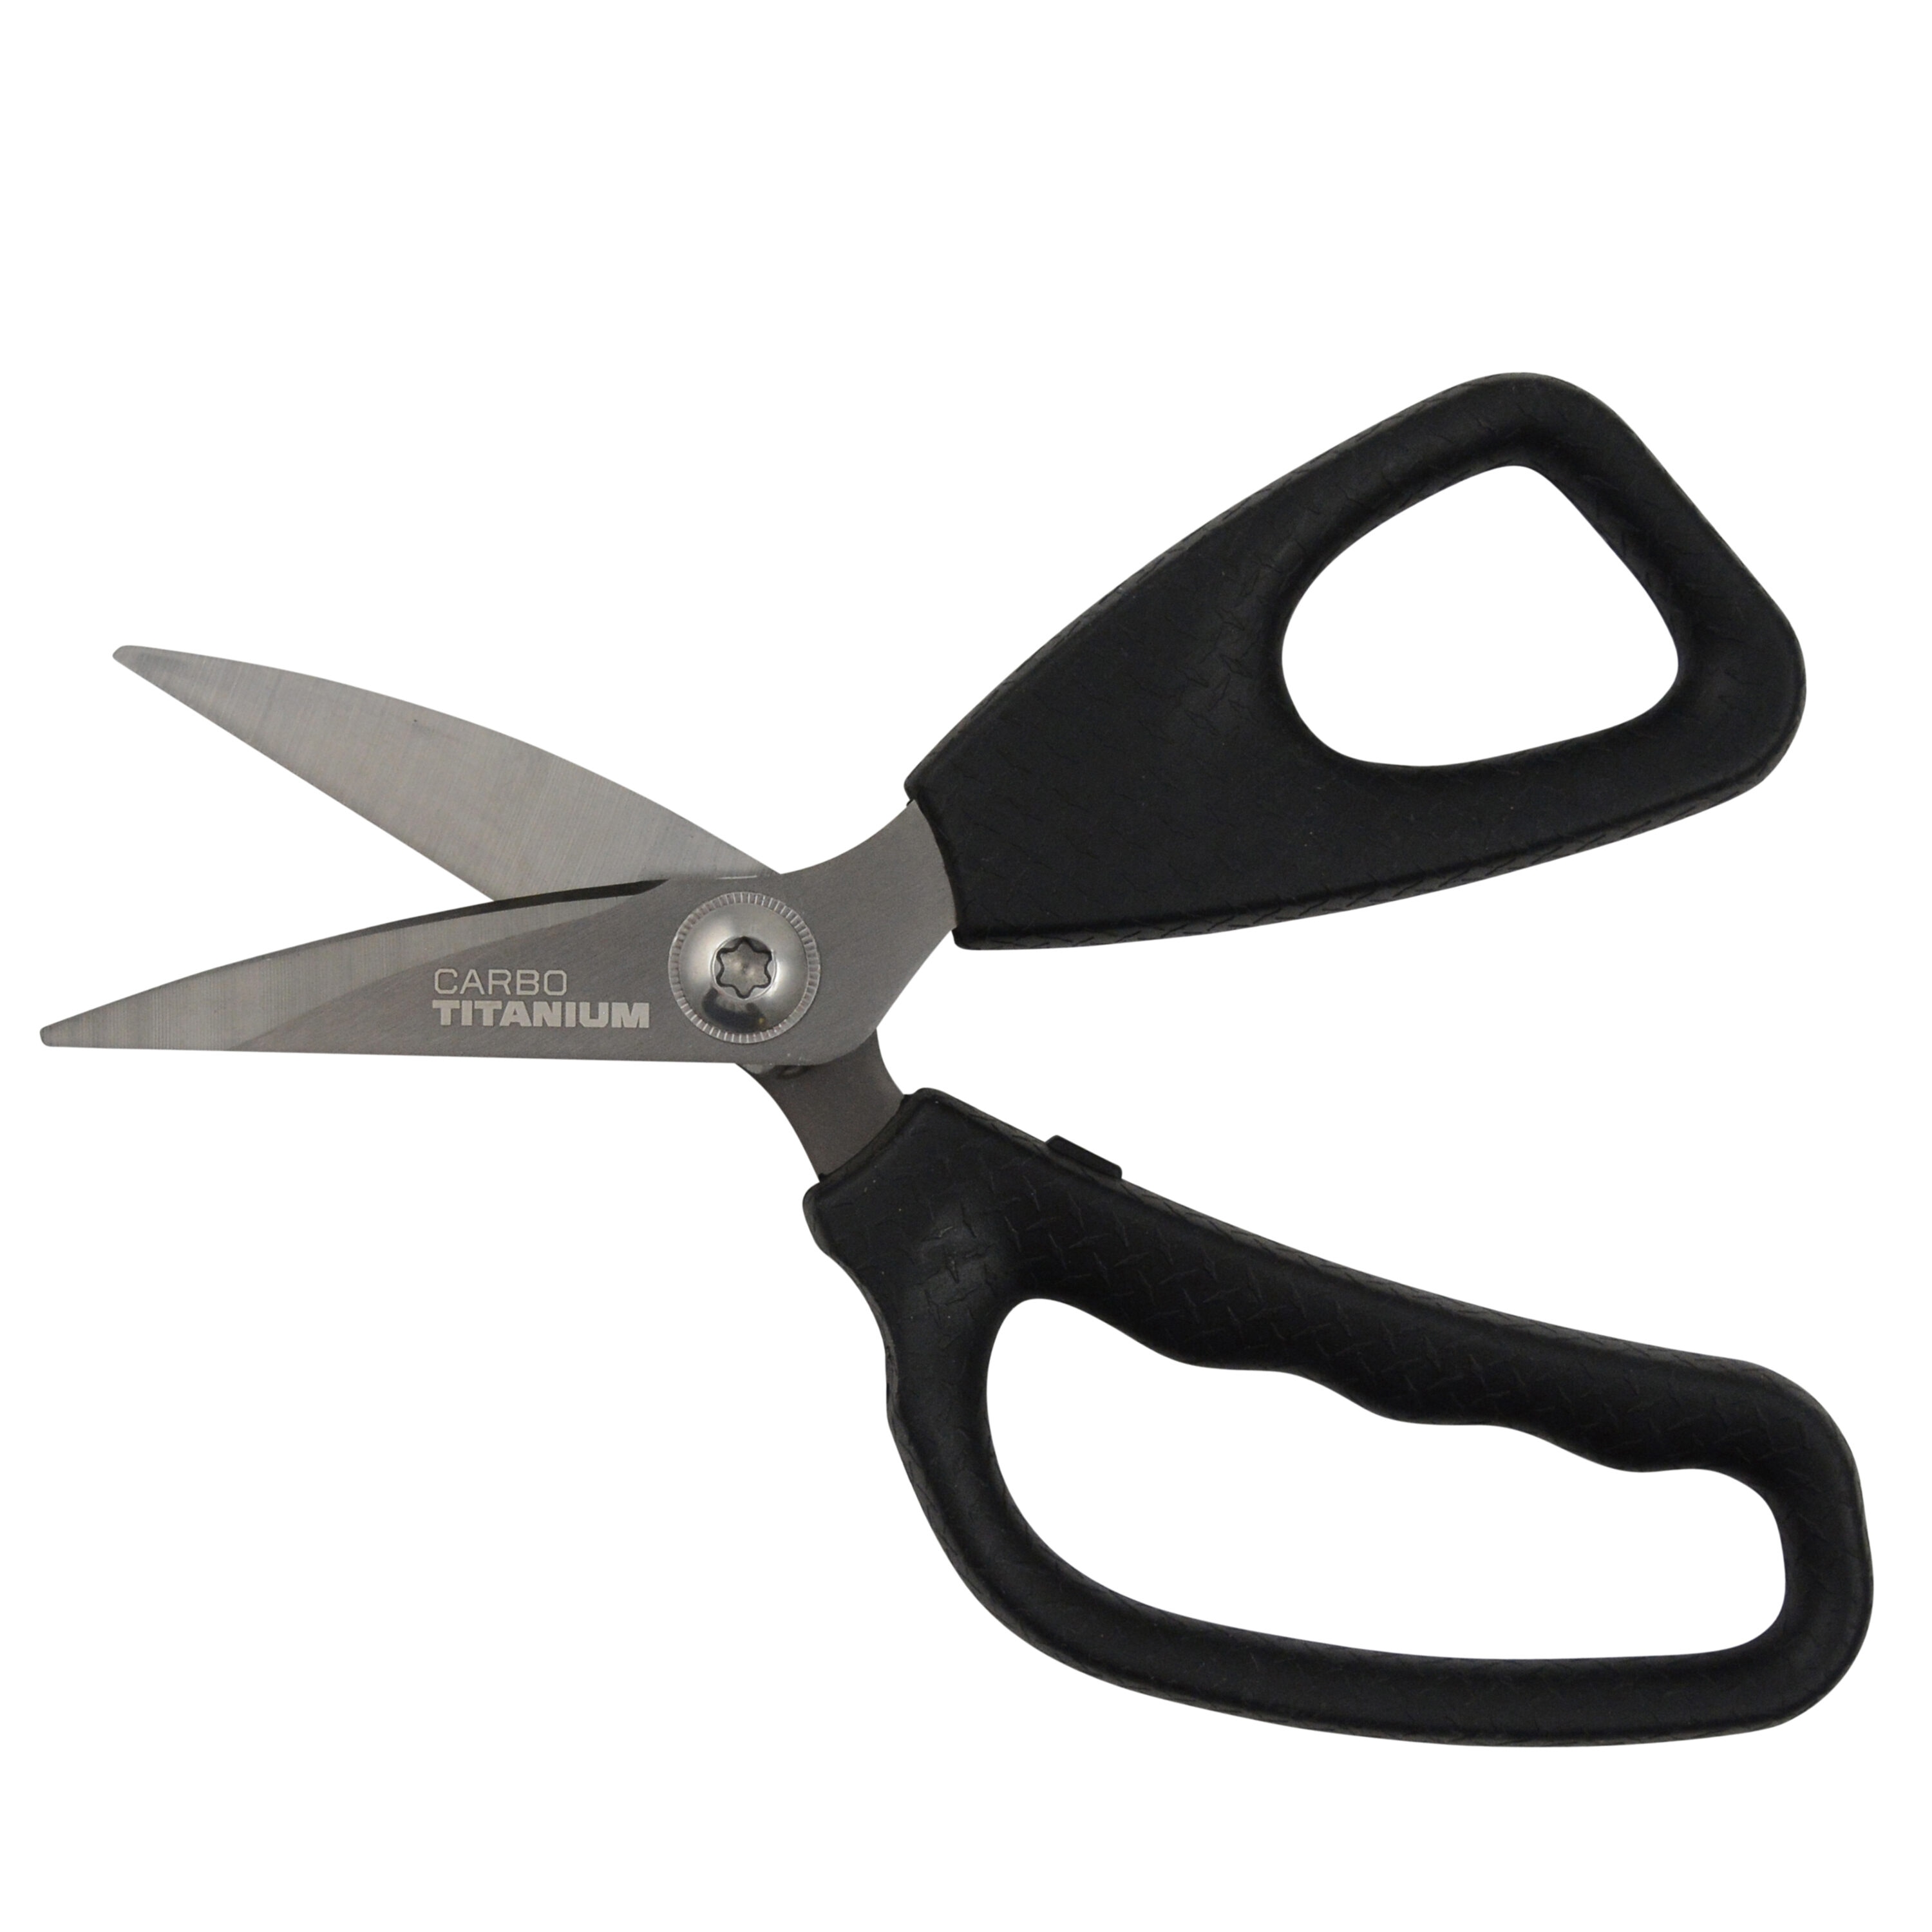 Kobalt Stainless Steel 2 Pc Non-slip Scissors in the Scissors department at